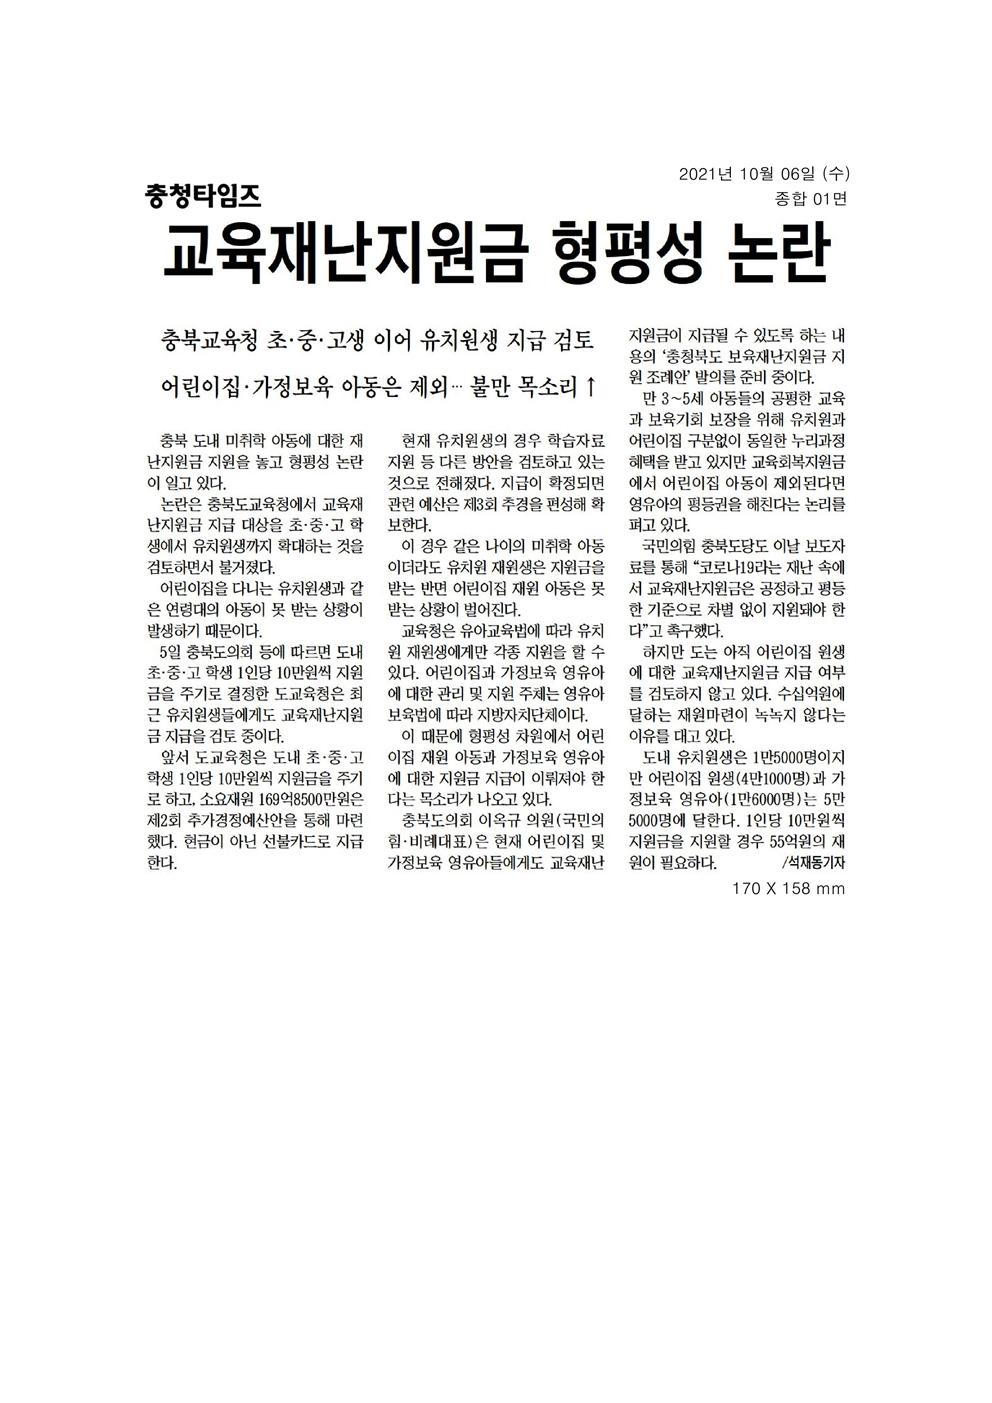 이옥규의원 교육재난지원금 조례발의 신문보도 - 2